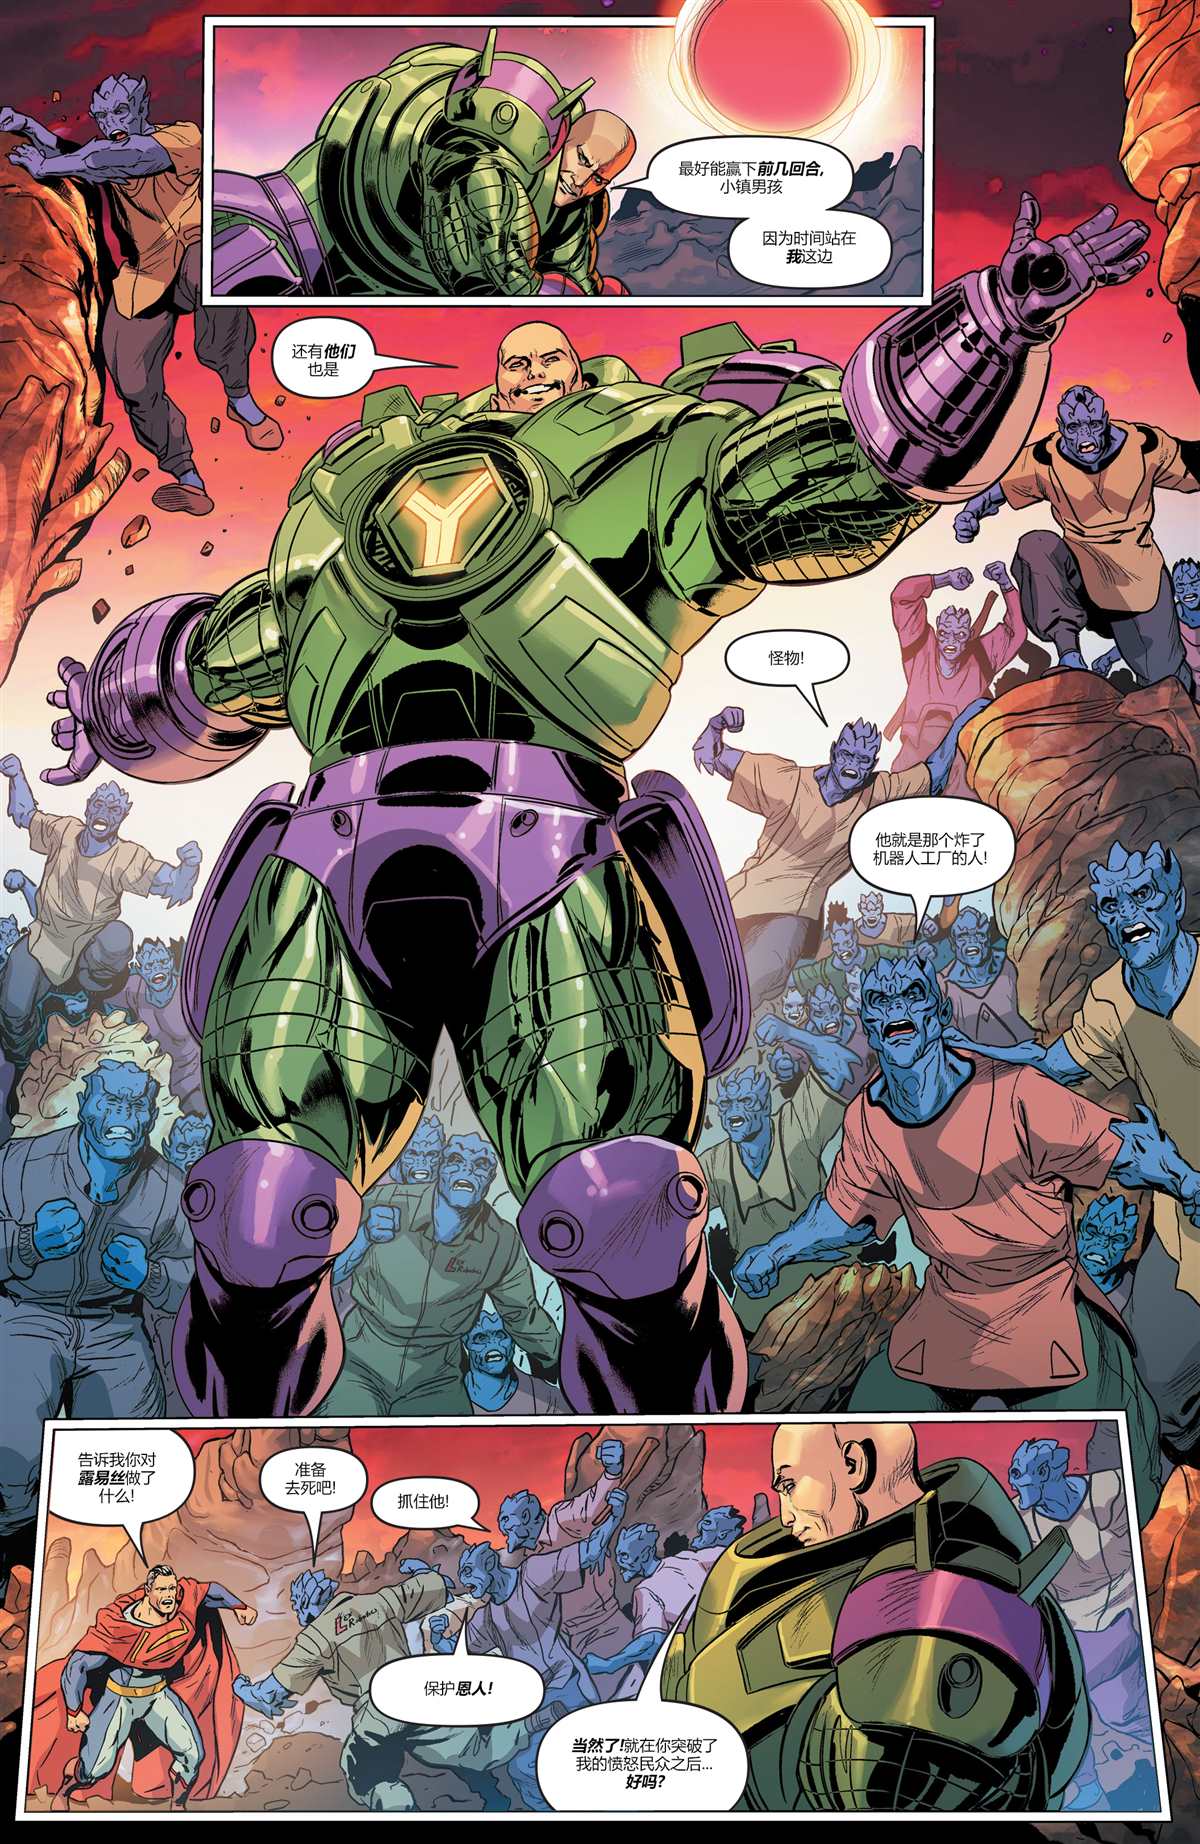 未来态-超人大战霸王莱克斯#216